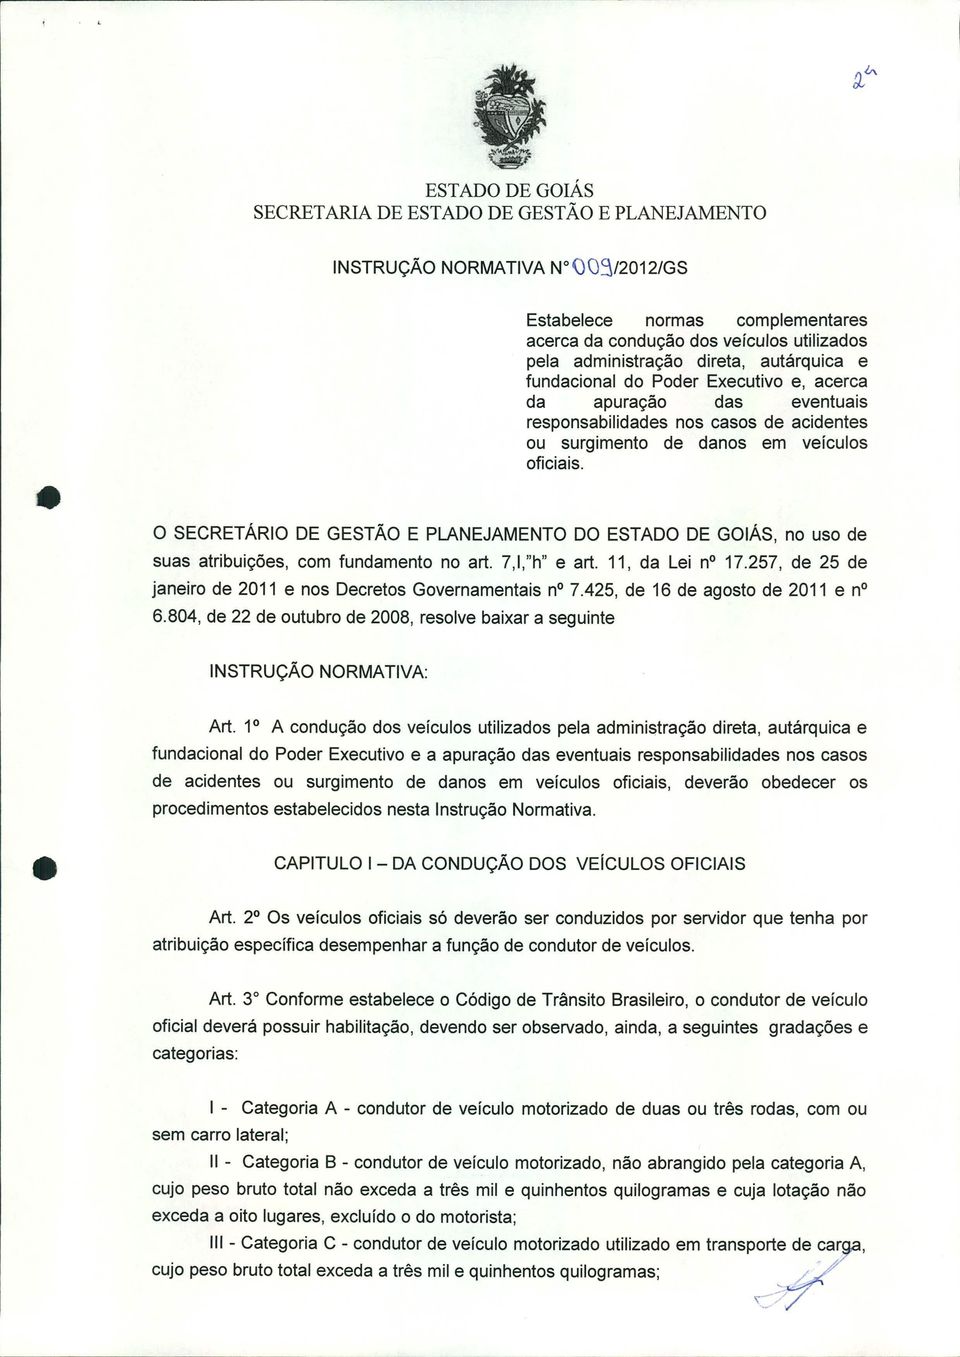 O SECRETÁRIO DE GESTÃO E PLANEJAMENTO DO, no uso de suas atribuições, com fundamento no art. 7,I,"h" e art. 11, da lei no 17.257, de 25 de janeiro de 2011 e nos Decretos Governamentais no7.